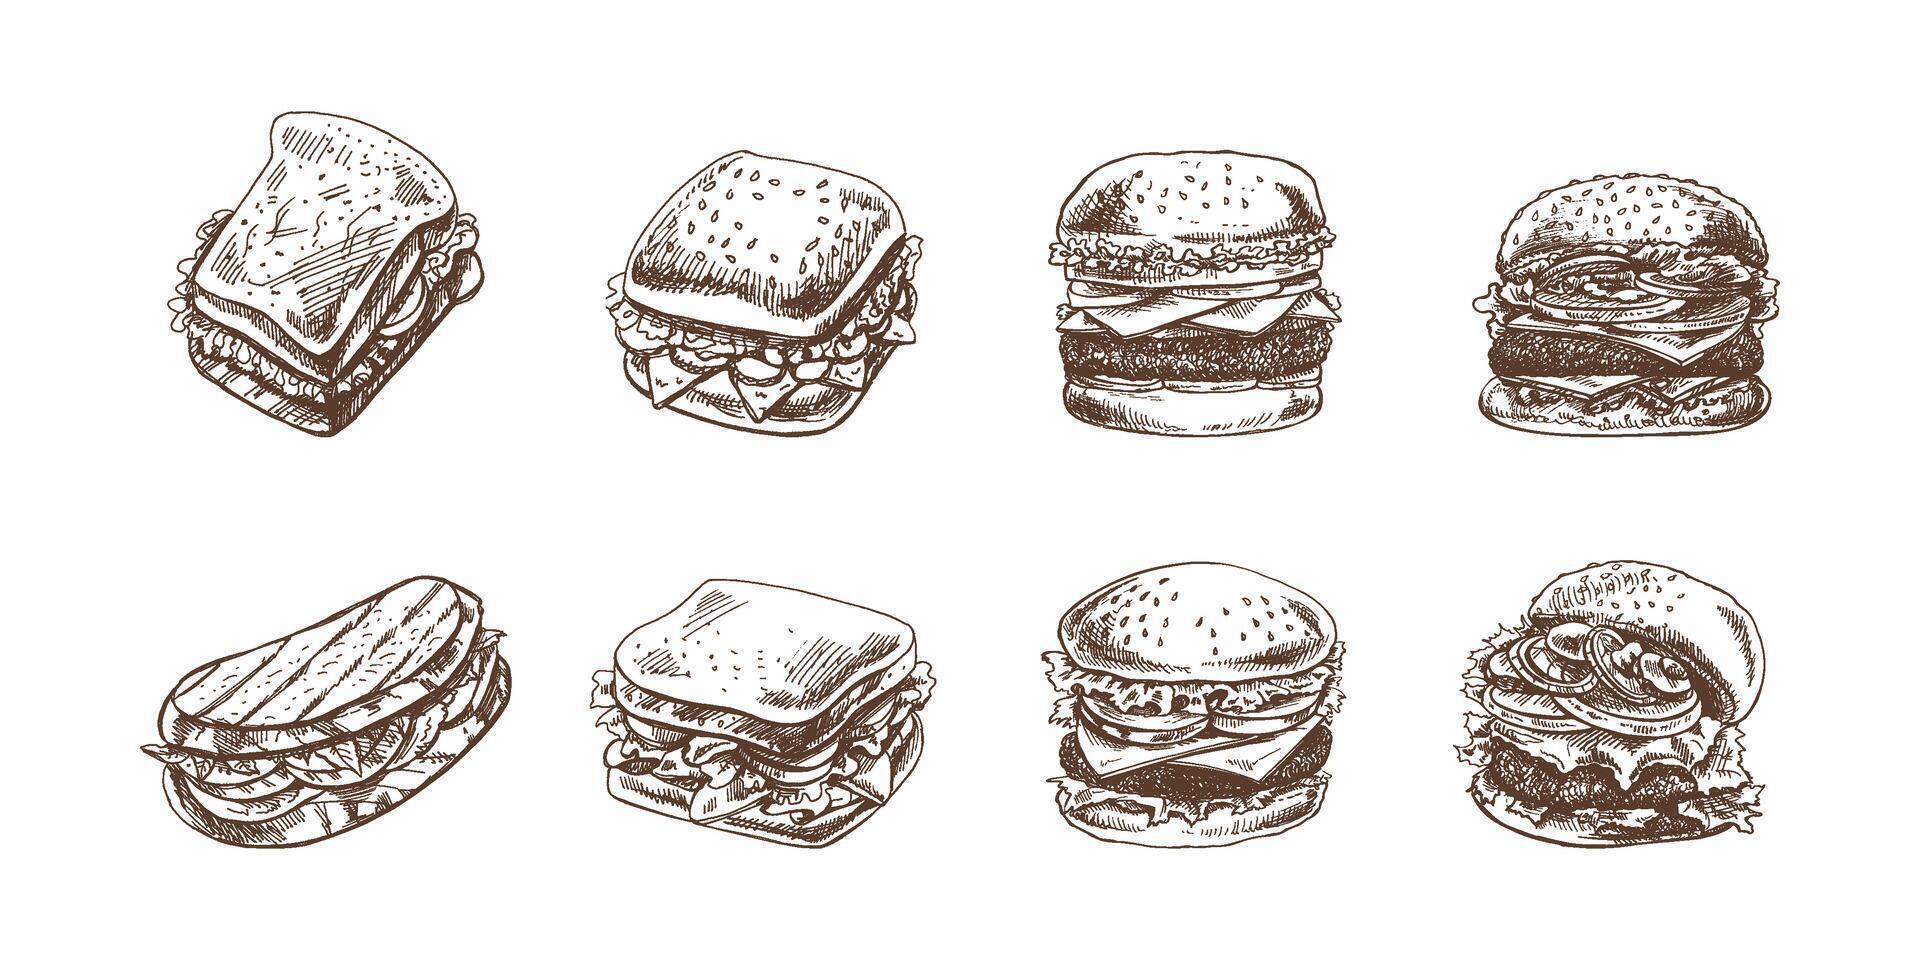 hamburgare och smörgåsar uppsättning. ritad för hand svartvit skisser av annorlunda hamburgare och smörgåsar med bacon, ost, sallad, tomater, gurkor etc. snabb mat retro illustrationer. vektor